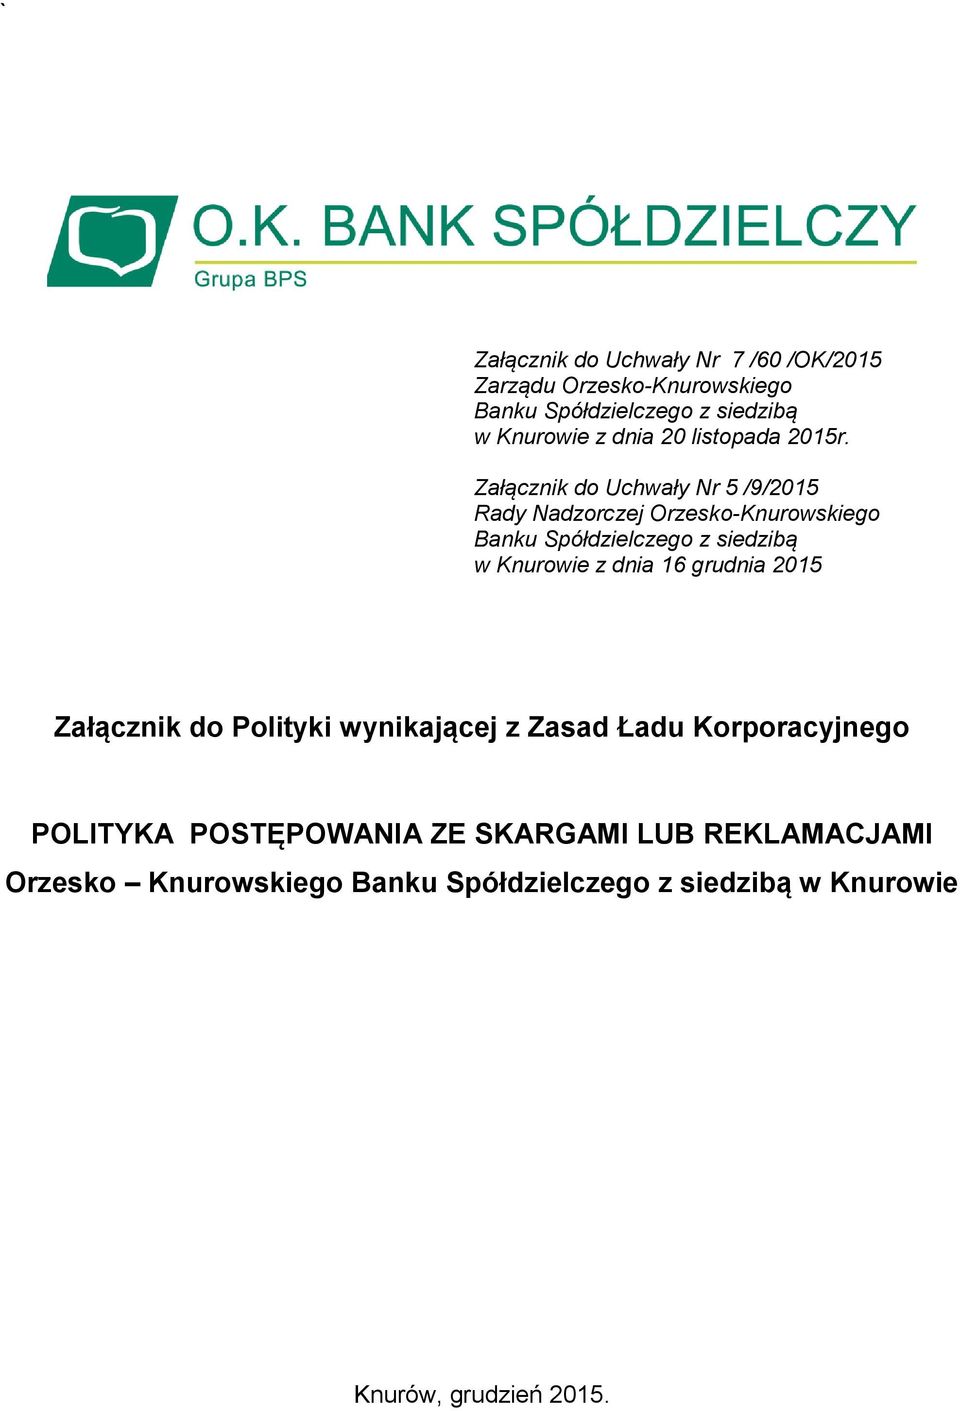 Załącznik do Uchwały Nr 5 /9/2015 Rady Nadzorczej Orzesko-Knurowskiego Banku Spółdzielczego z siedzibą w Knurowie z